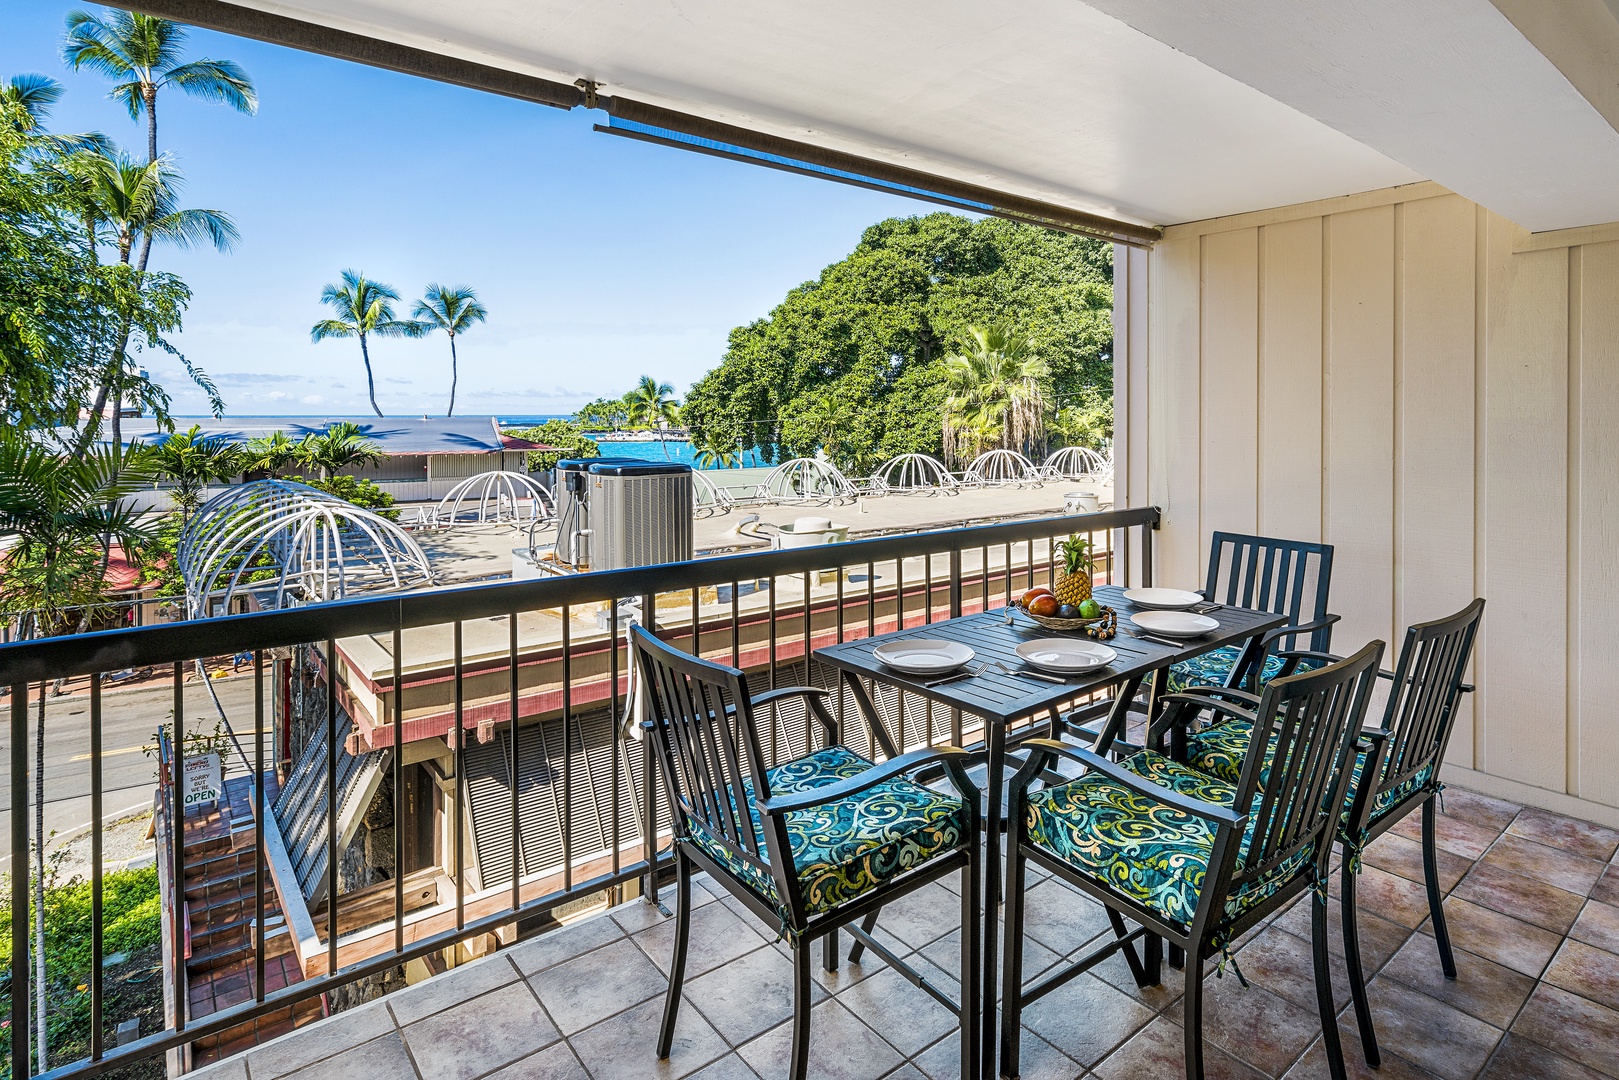 Kailua Kona Vacation Rentals, Kona Plaza 201 - Outdoor dining for 4!